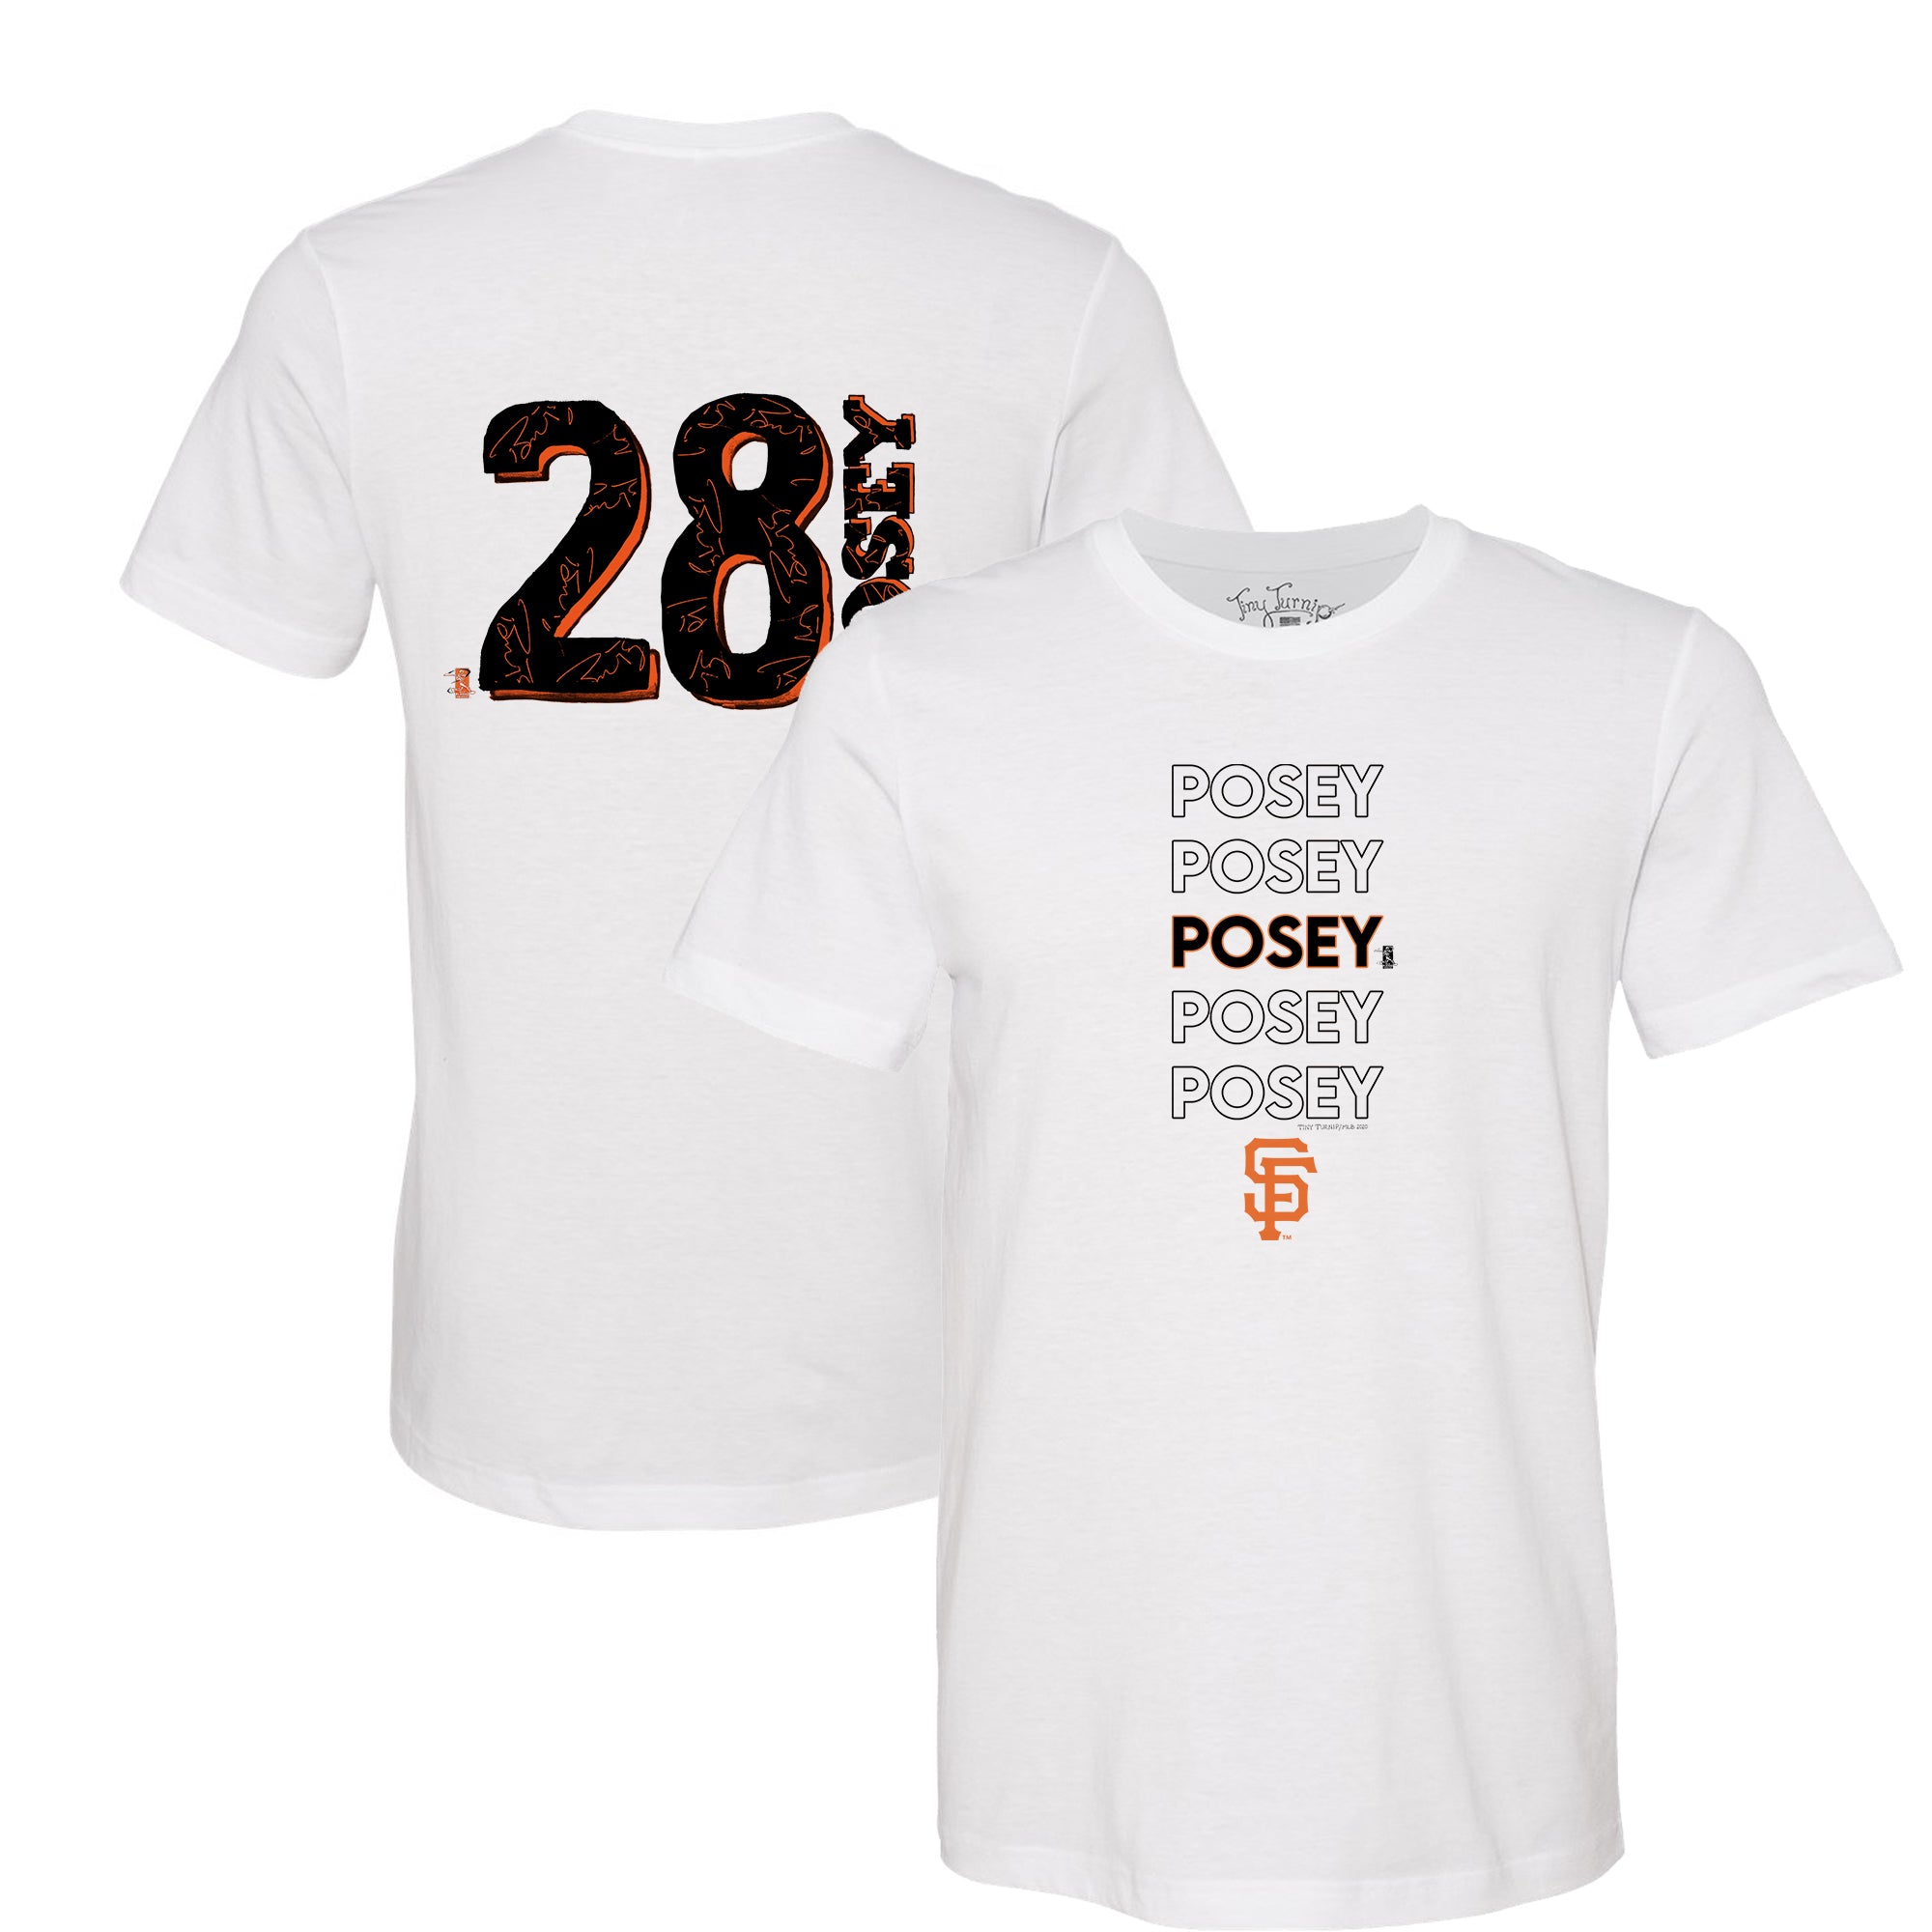 Buster Posey Shirts, Hoodies, & Apparel, San Francisco, MLBPA